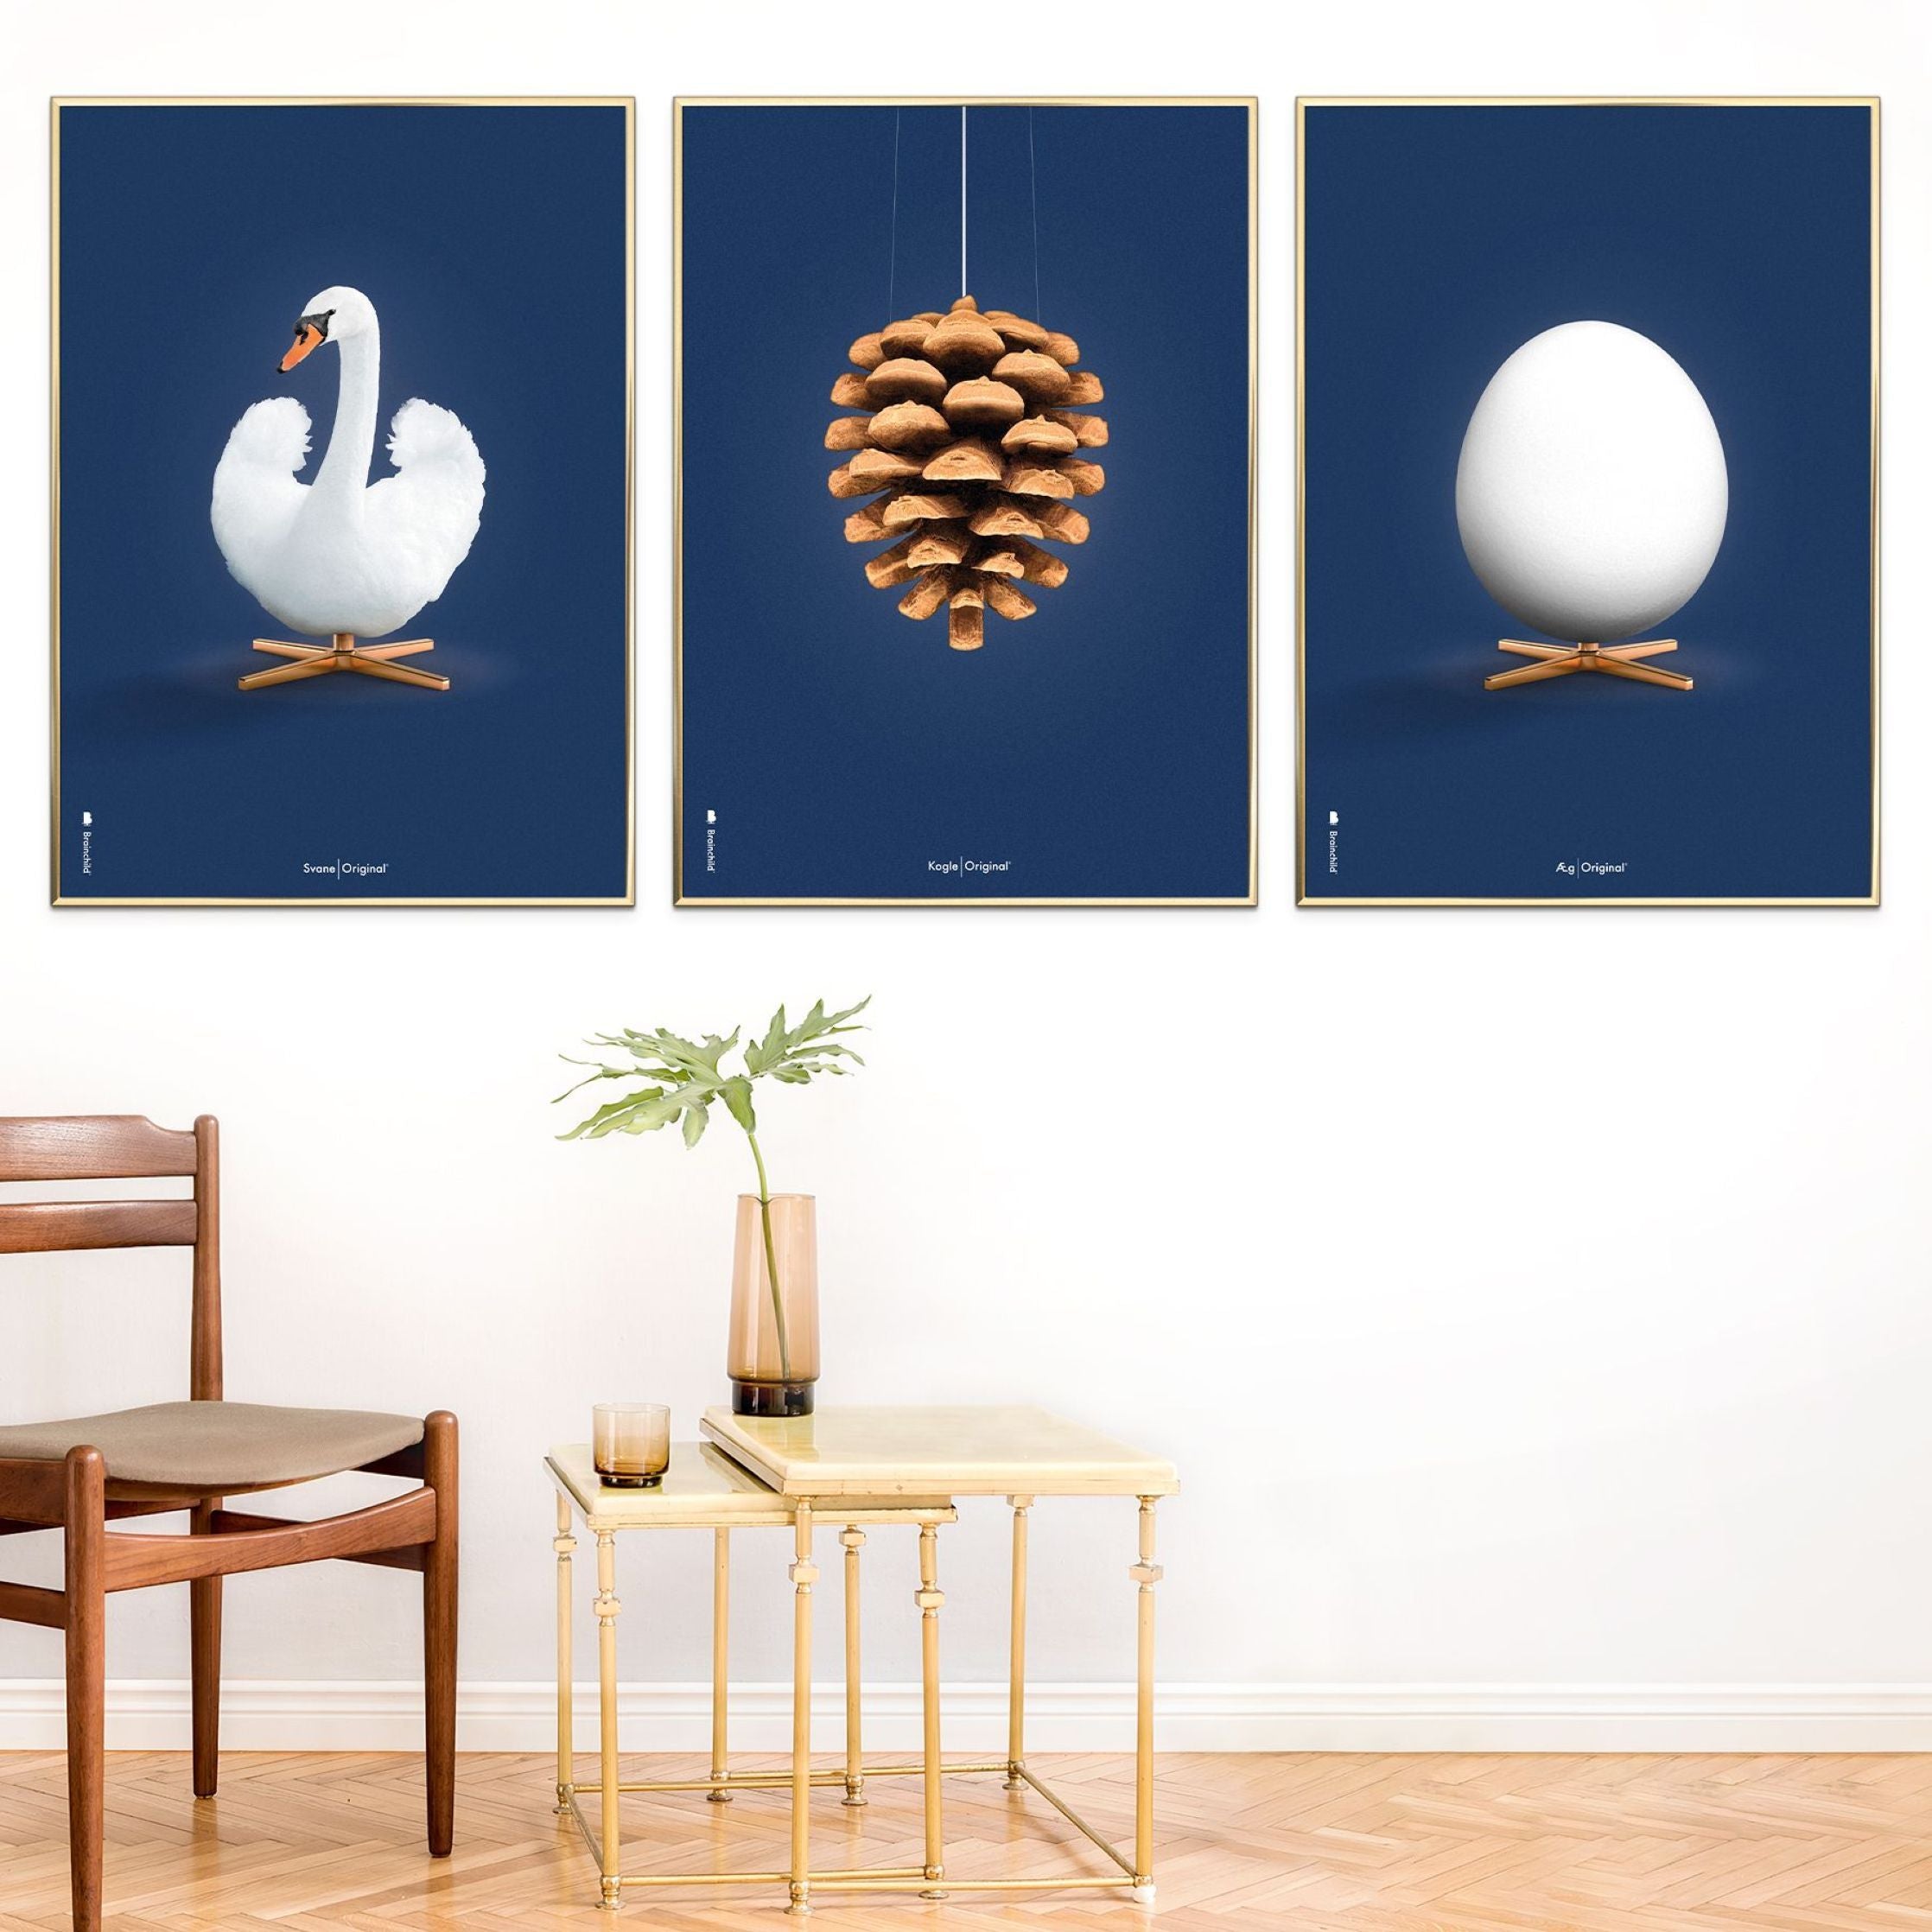 Brainchild Egg Classic Poster ohne Rahmen 70 X100 cm, dunkelblauer Hintergrund